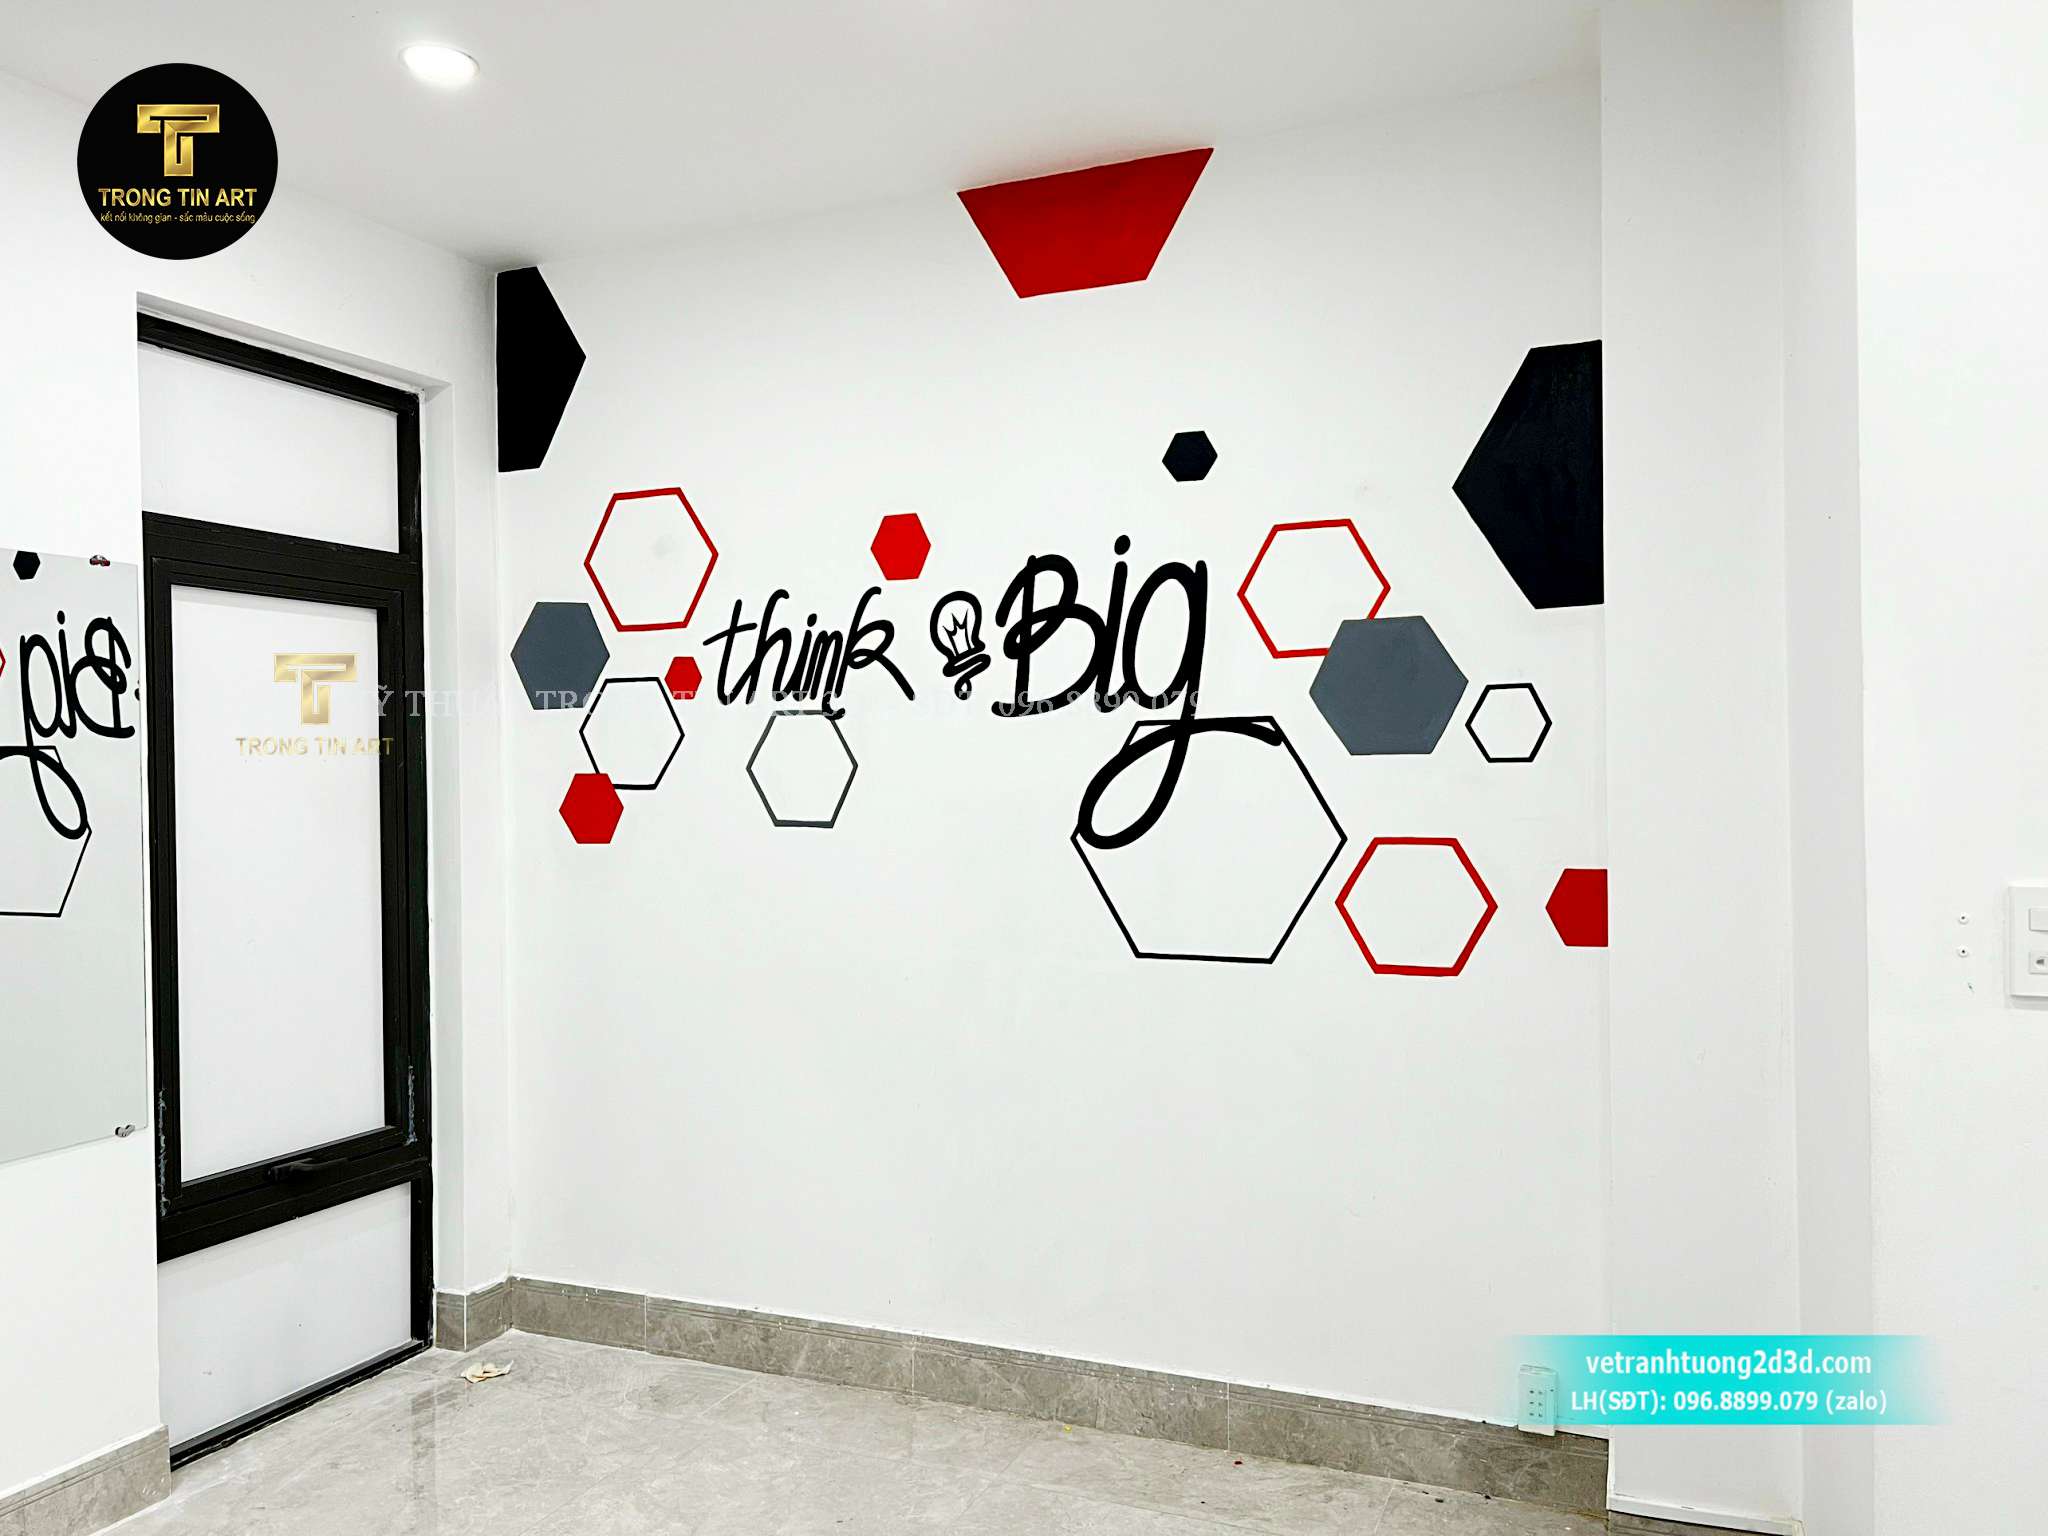 vẽ tường văn phòng,vẽ tranh văn phòng,vẽ tranh tường công ty,vẽ tranh tường công ty,vẽ cầu thang công ty,vẽ logo công ty,trang trí văn phòng